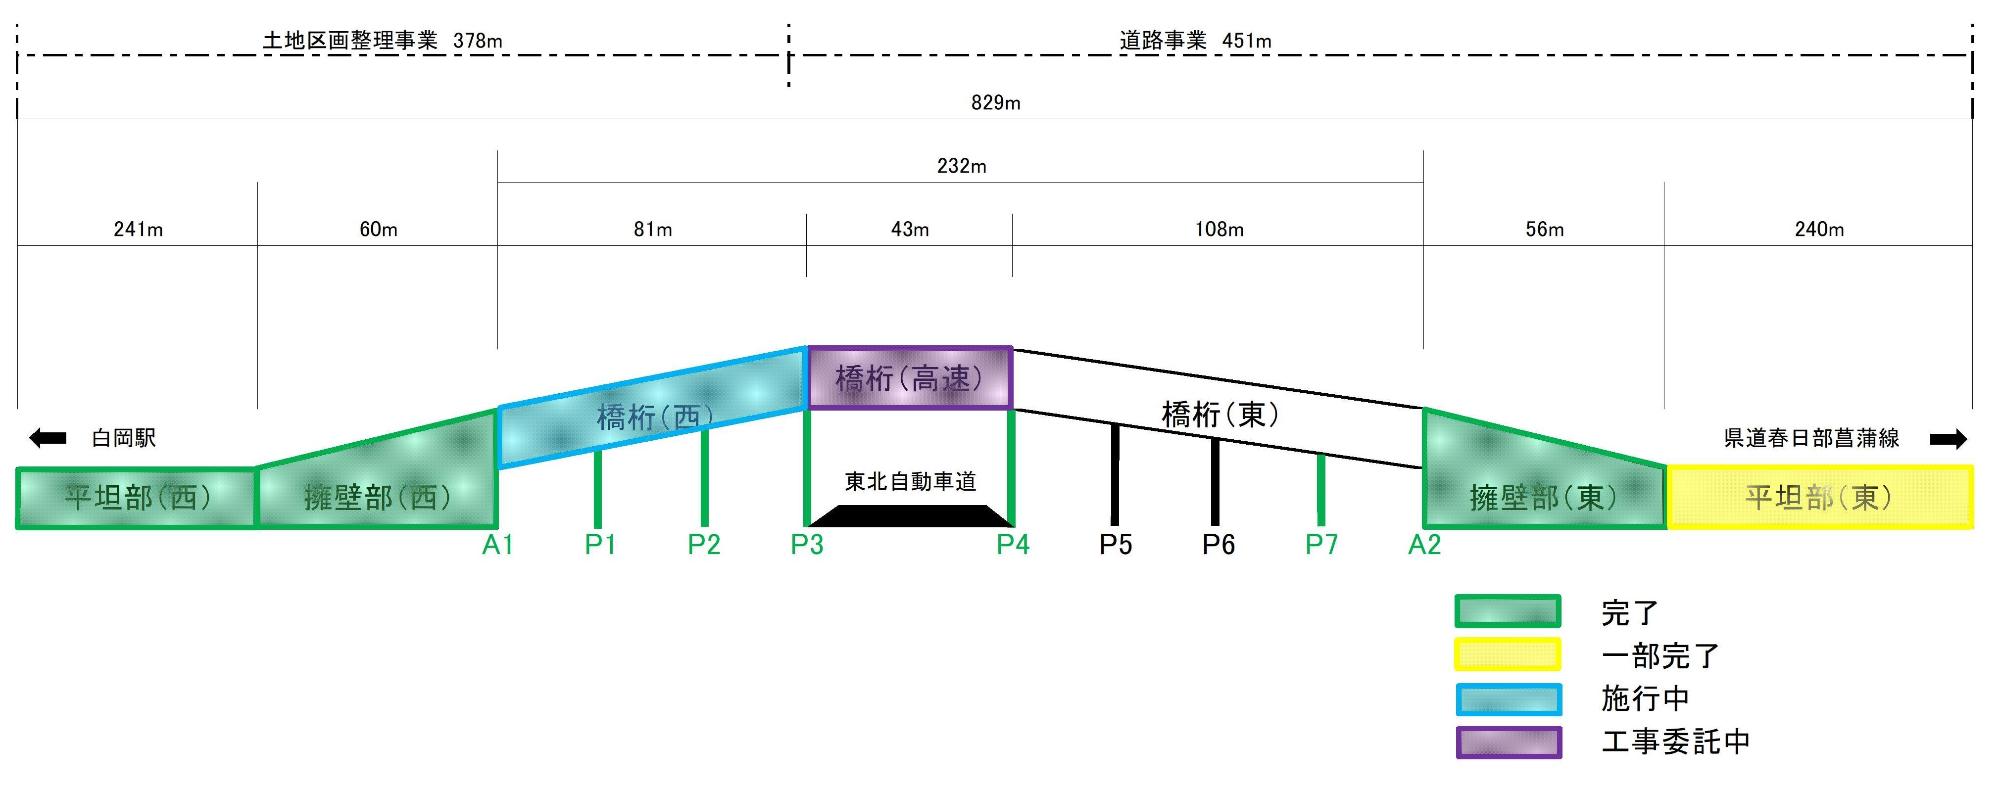 白岡宮代線の各ブロックの長さや進捗状況を記載した図